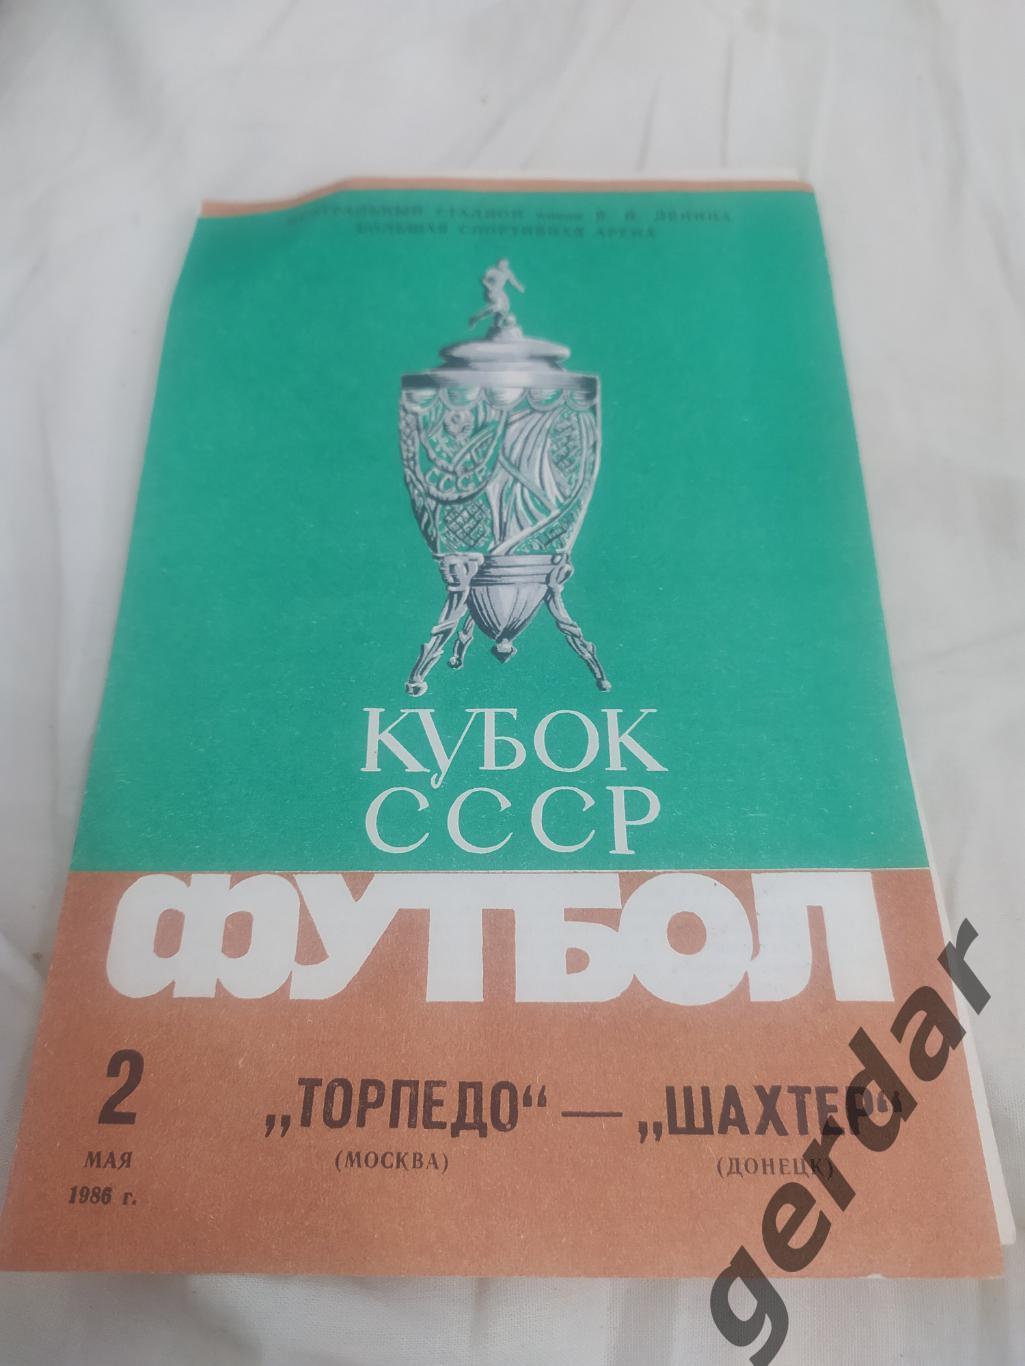 9 торпедо Москва шахтер донецк 1986 кубок финал